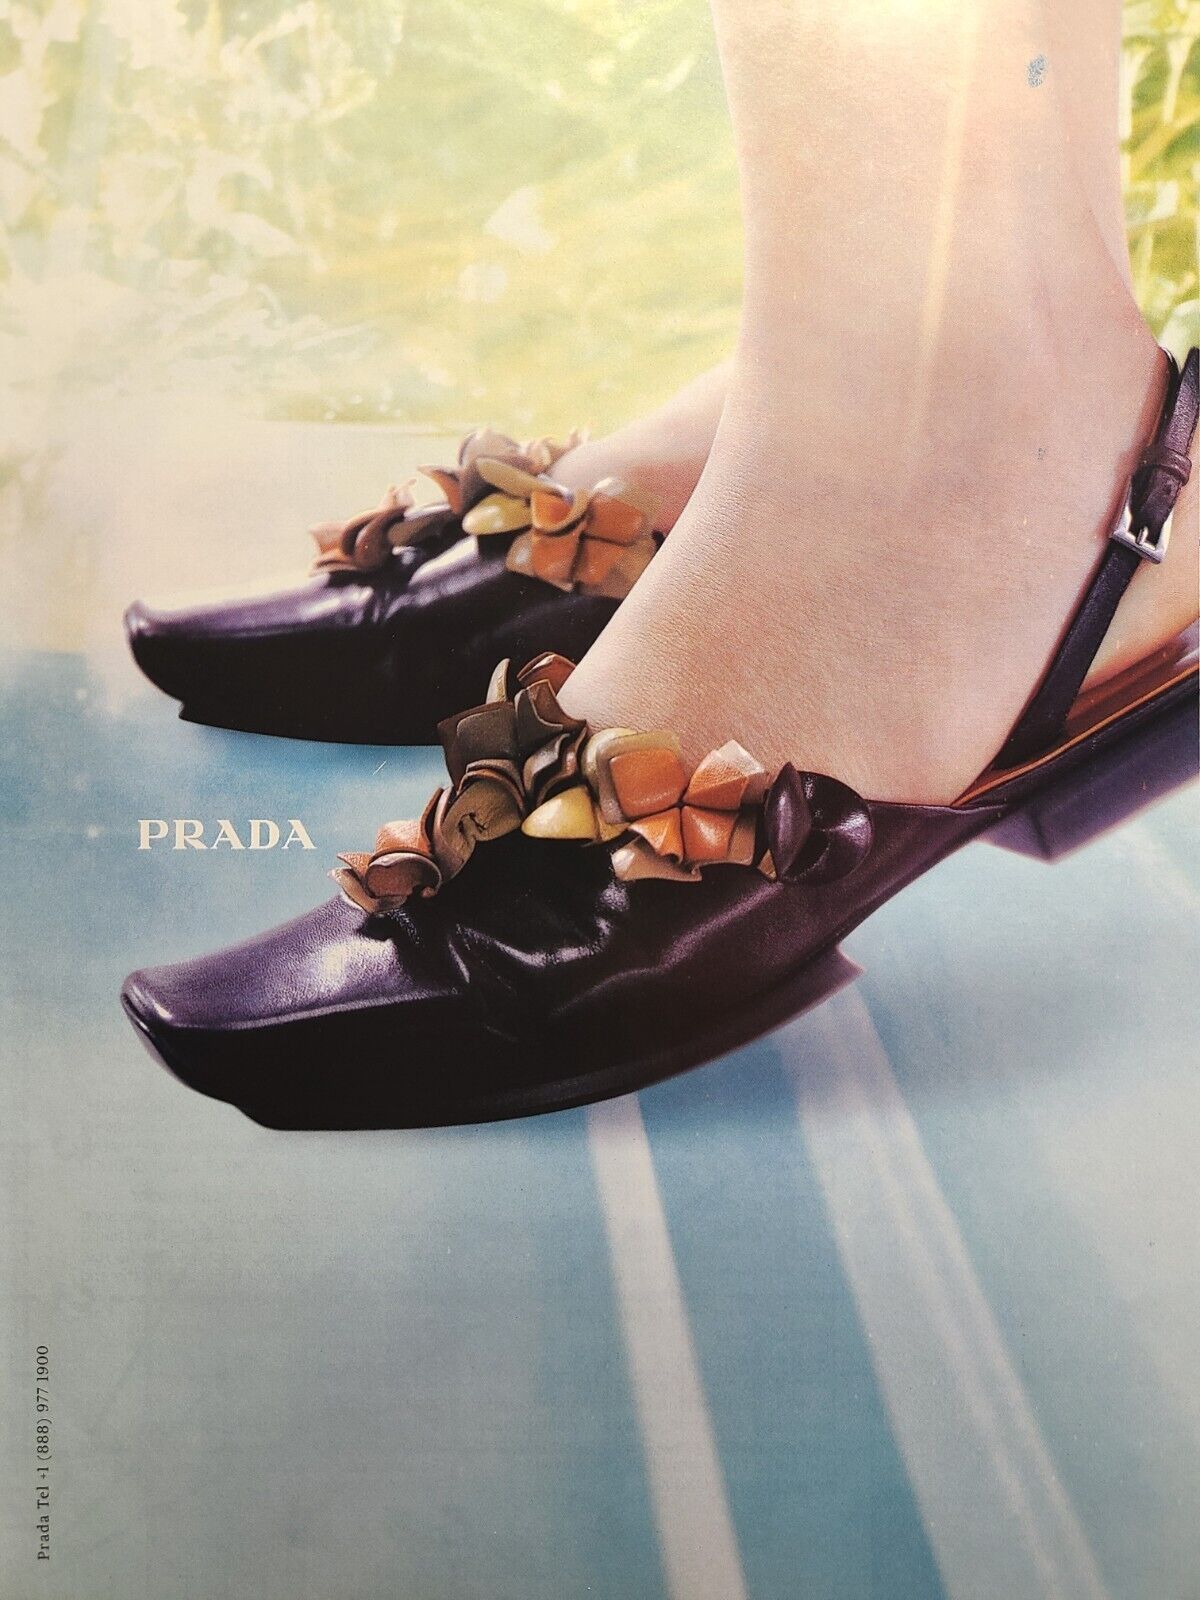 Prada Women's Shoes Leather Jade Floral Slingback Platform Vintage Print Ad 1999